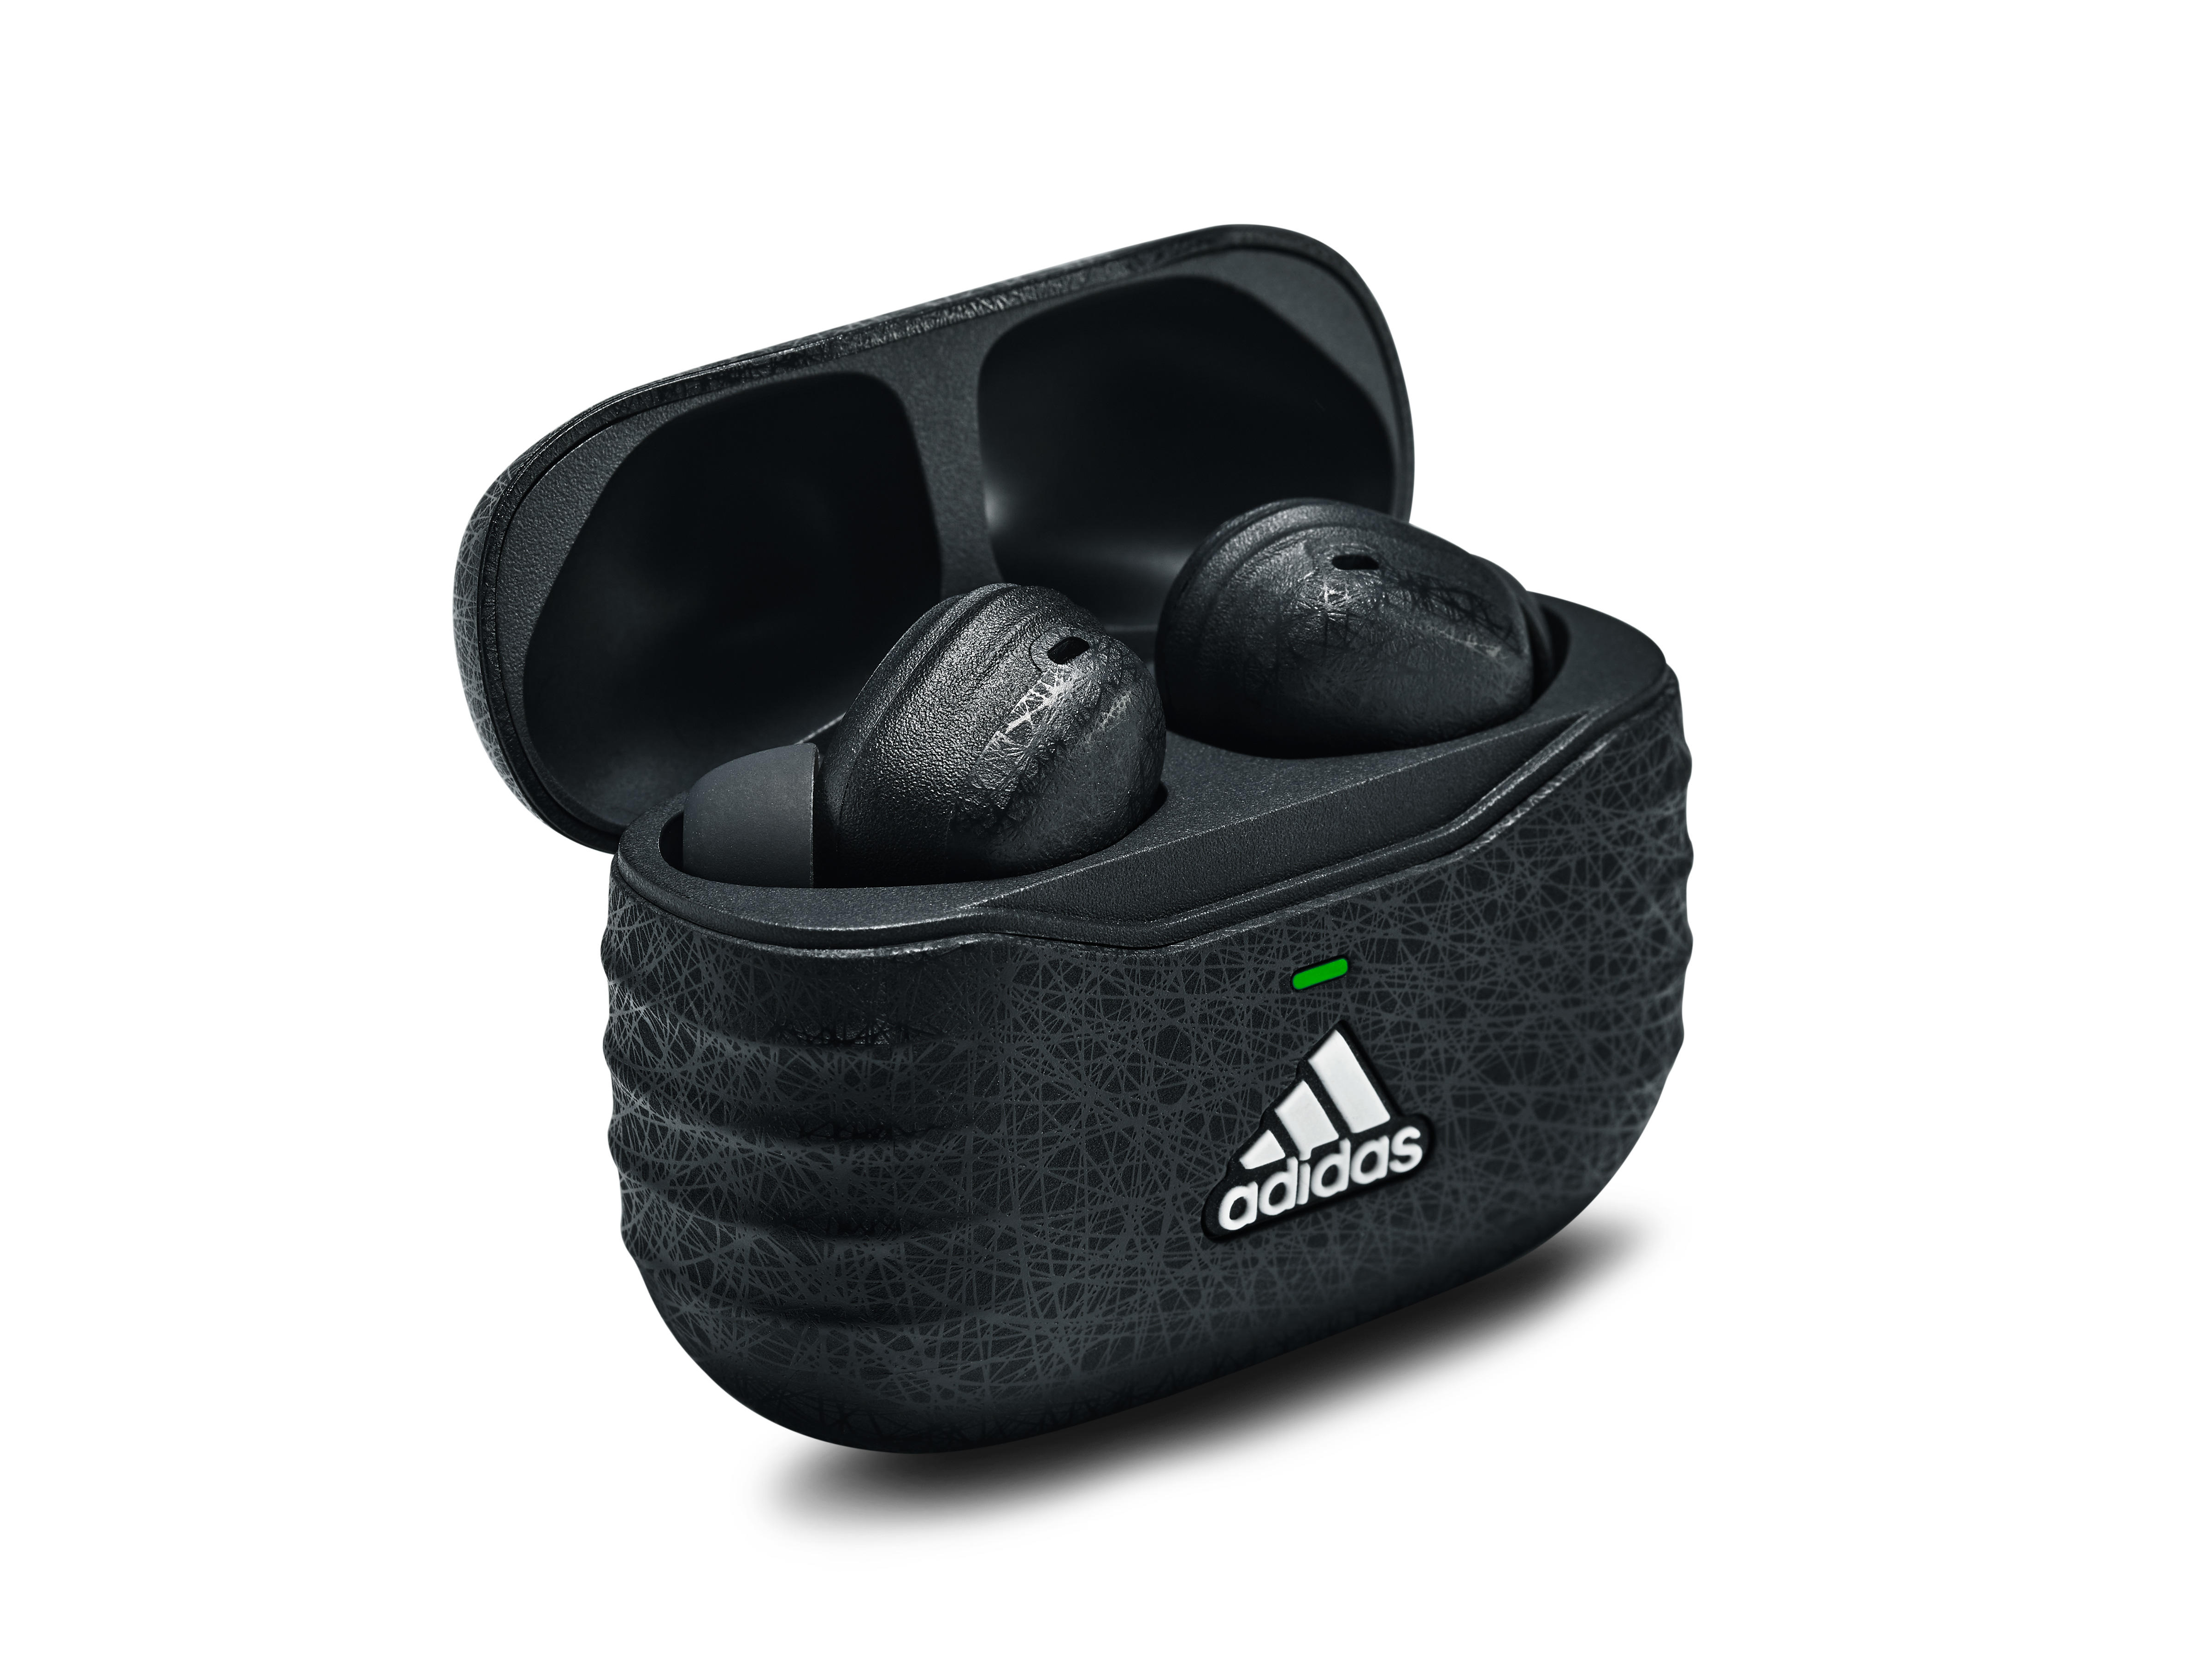 adidas(アディダス) 完全ワイヤレスイヤホン ANC Night Grey -の商品詳細 蔦屋書店オンラインストア